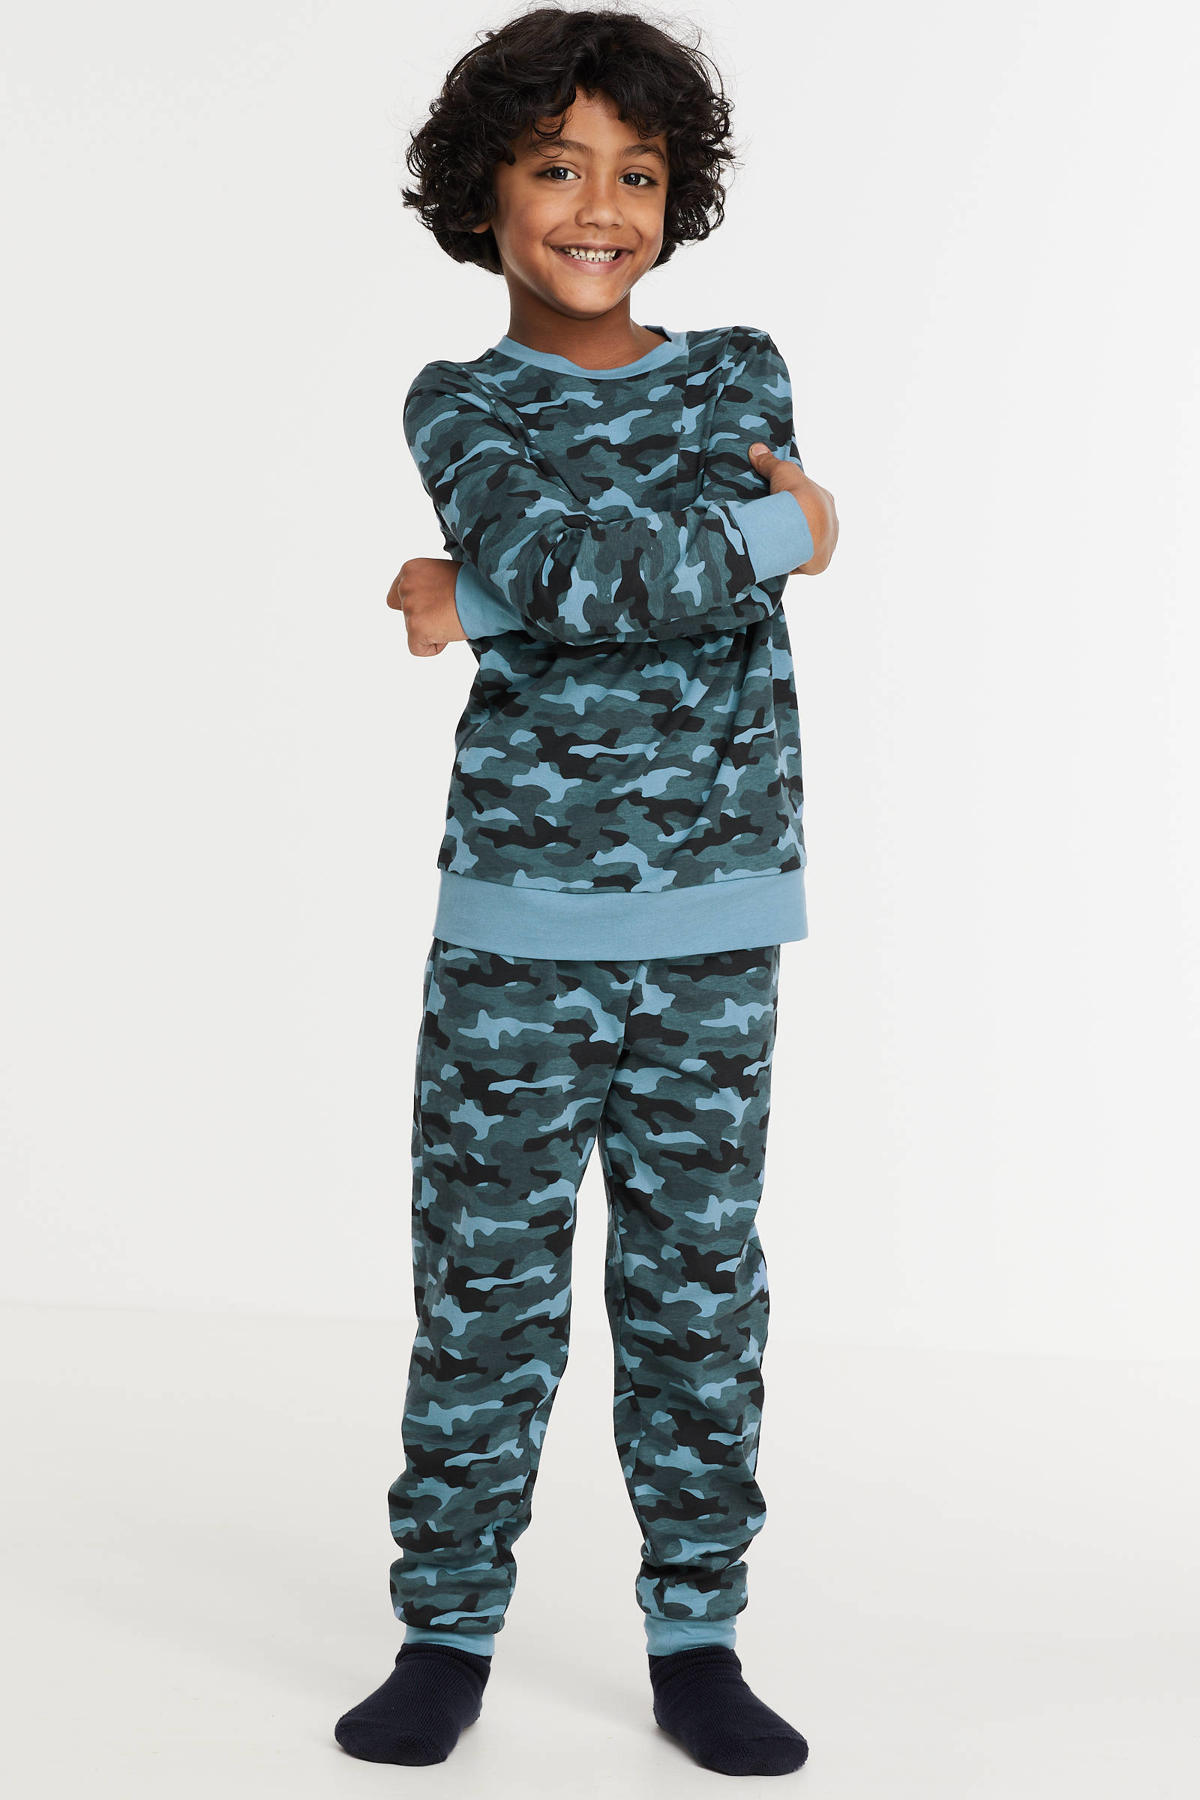 Stoffelijk overschot bedenken verpleegster Wild Side pyjama van biologisch katoen groen/lichtblauw | wehkamp